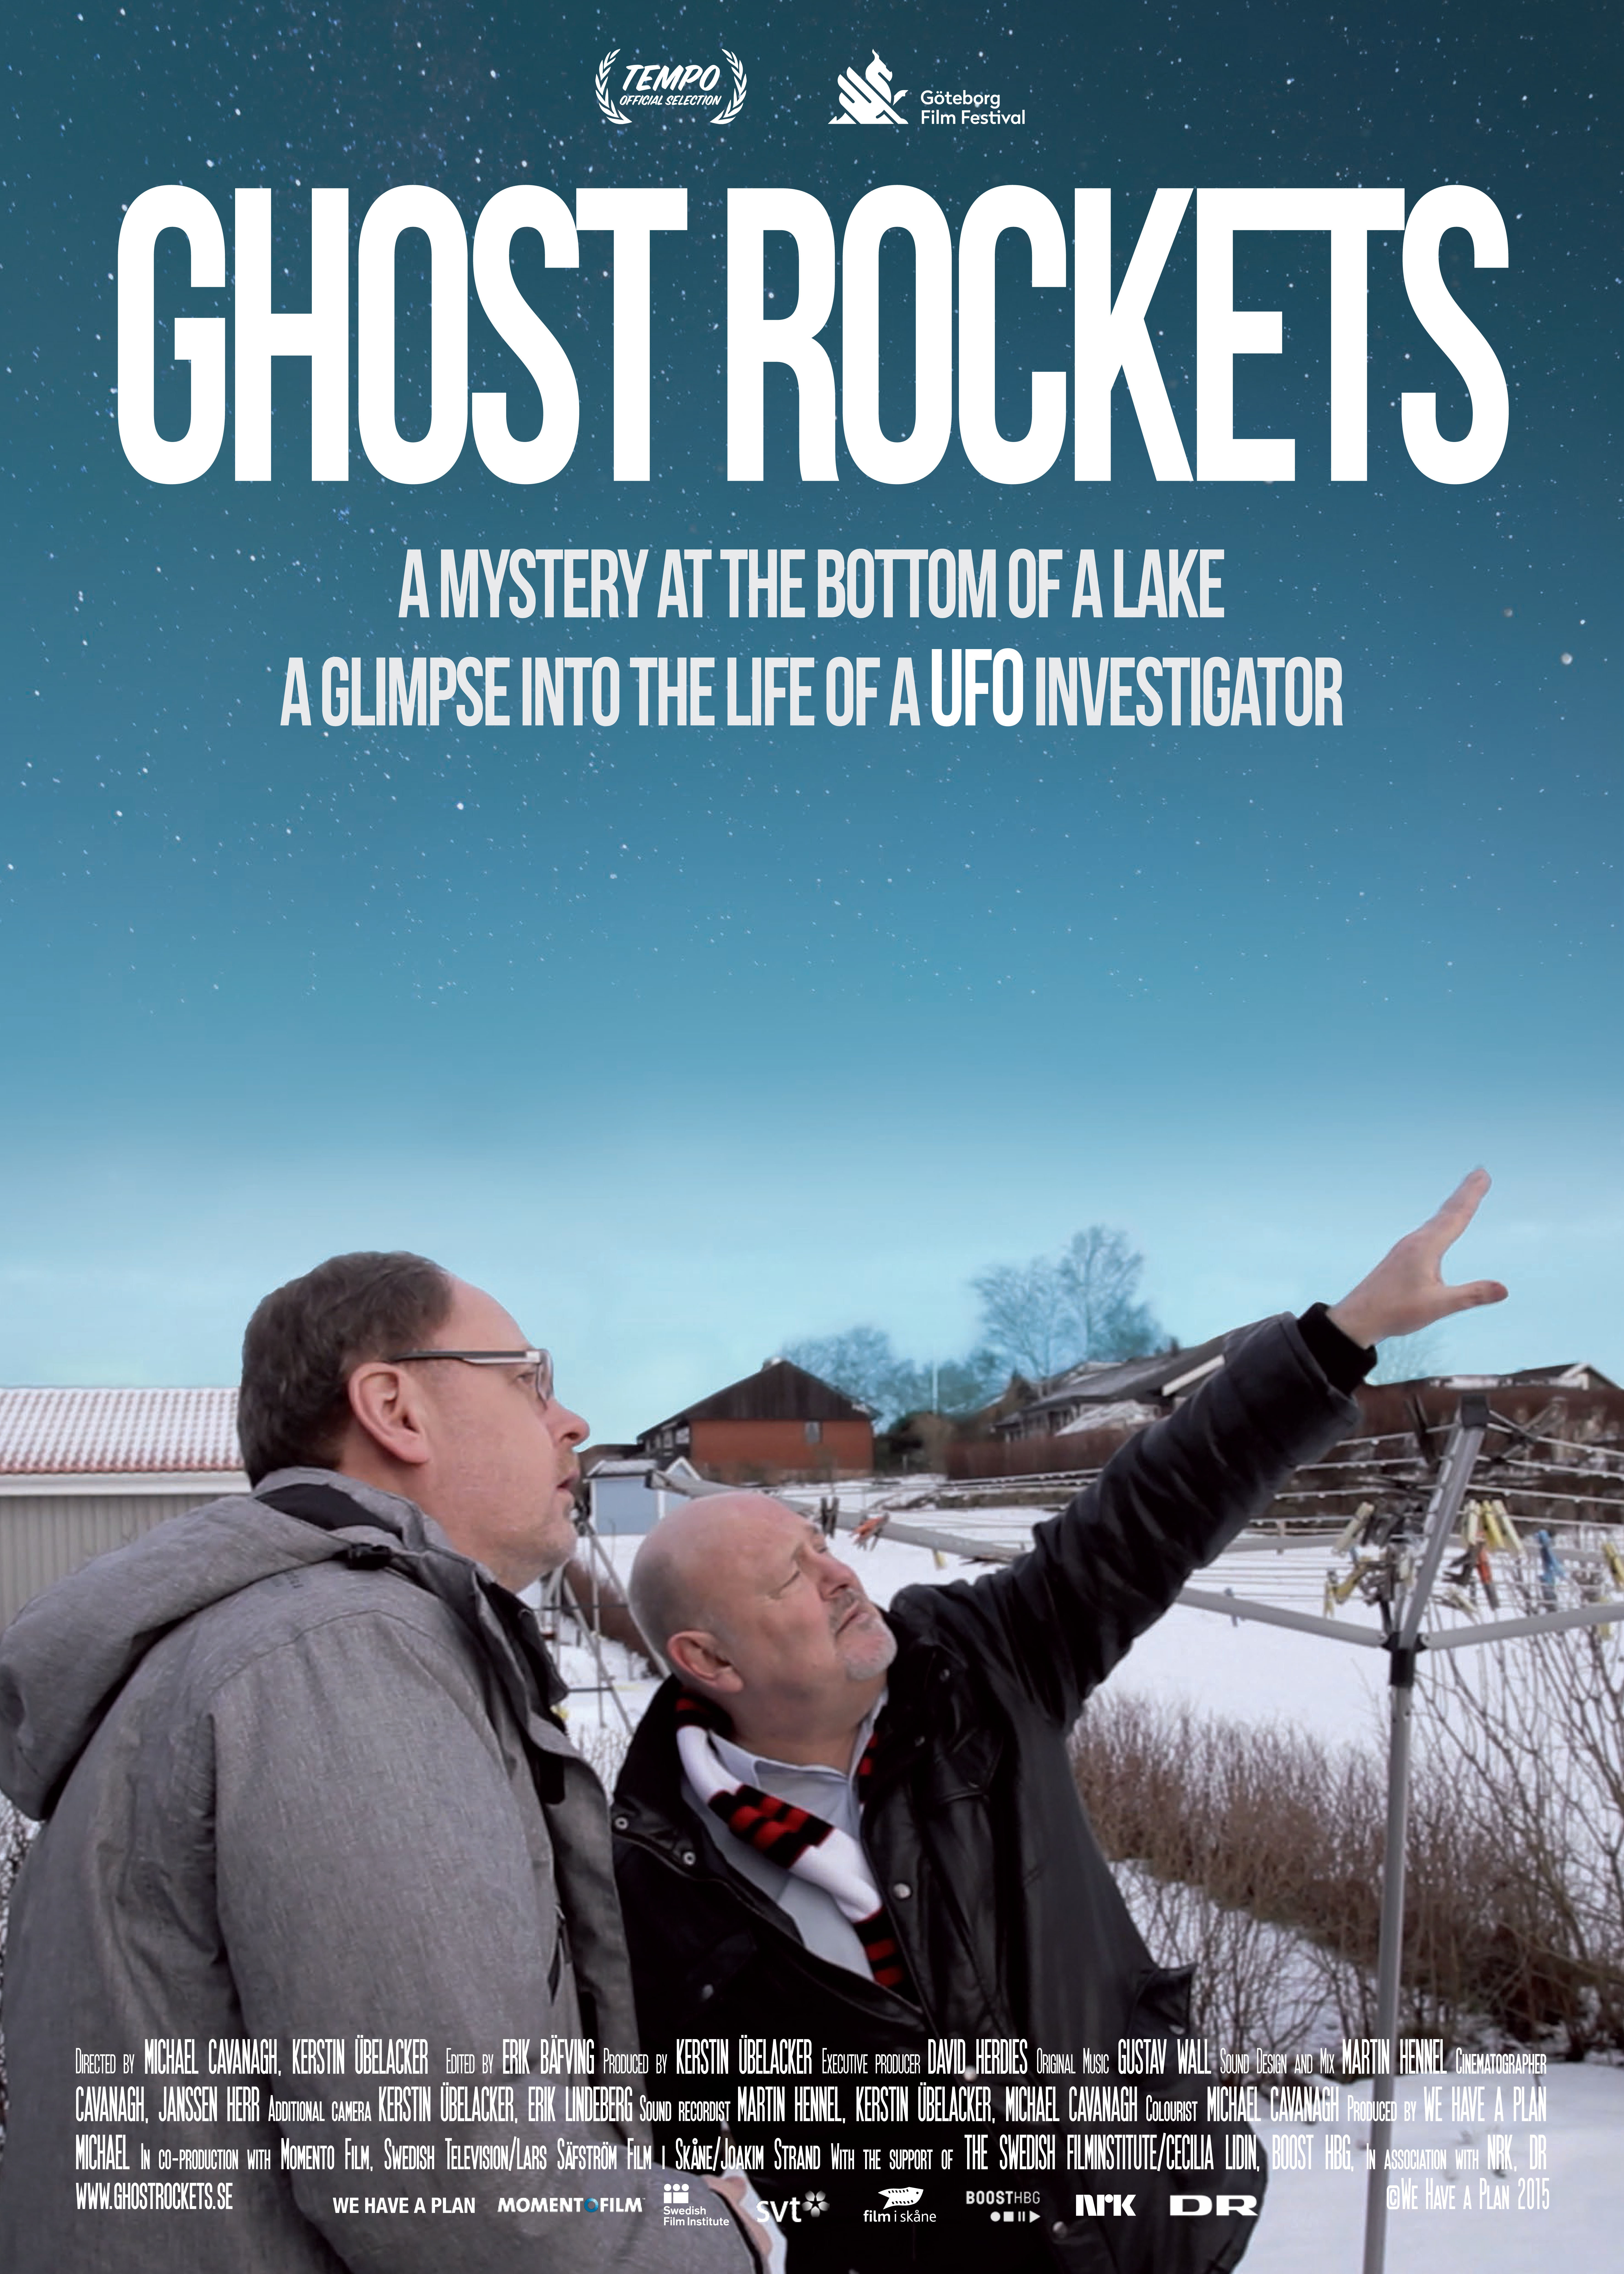 Ghost Rockets (2015) Screenshot 1